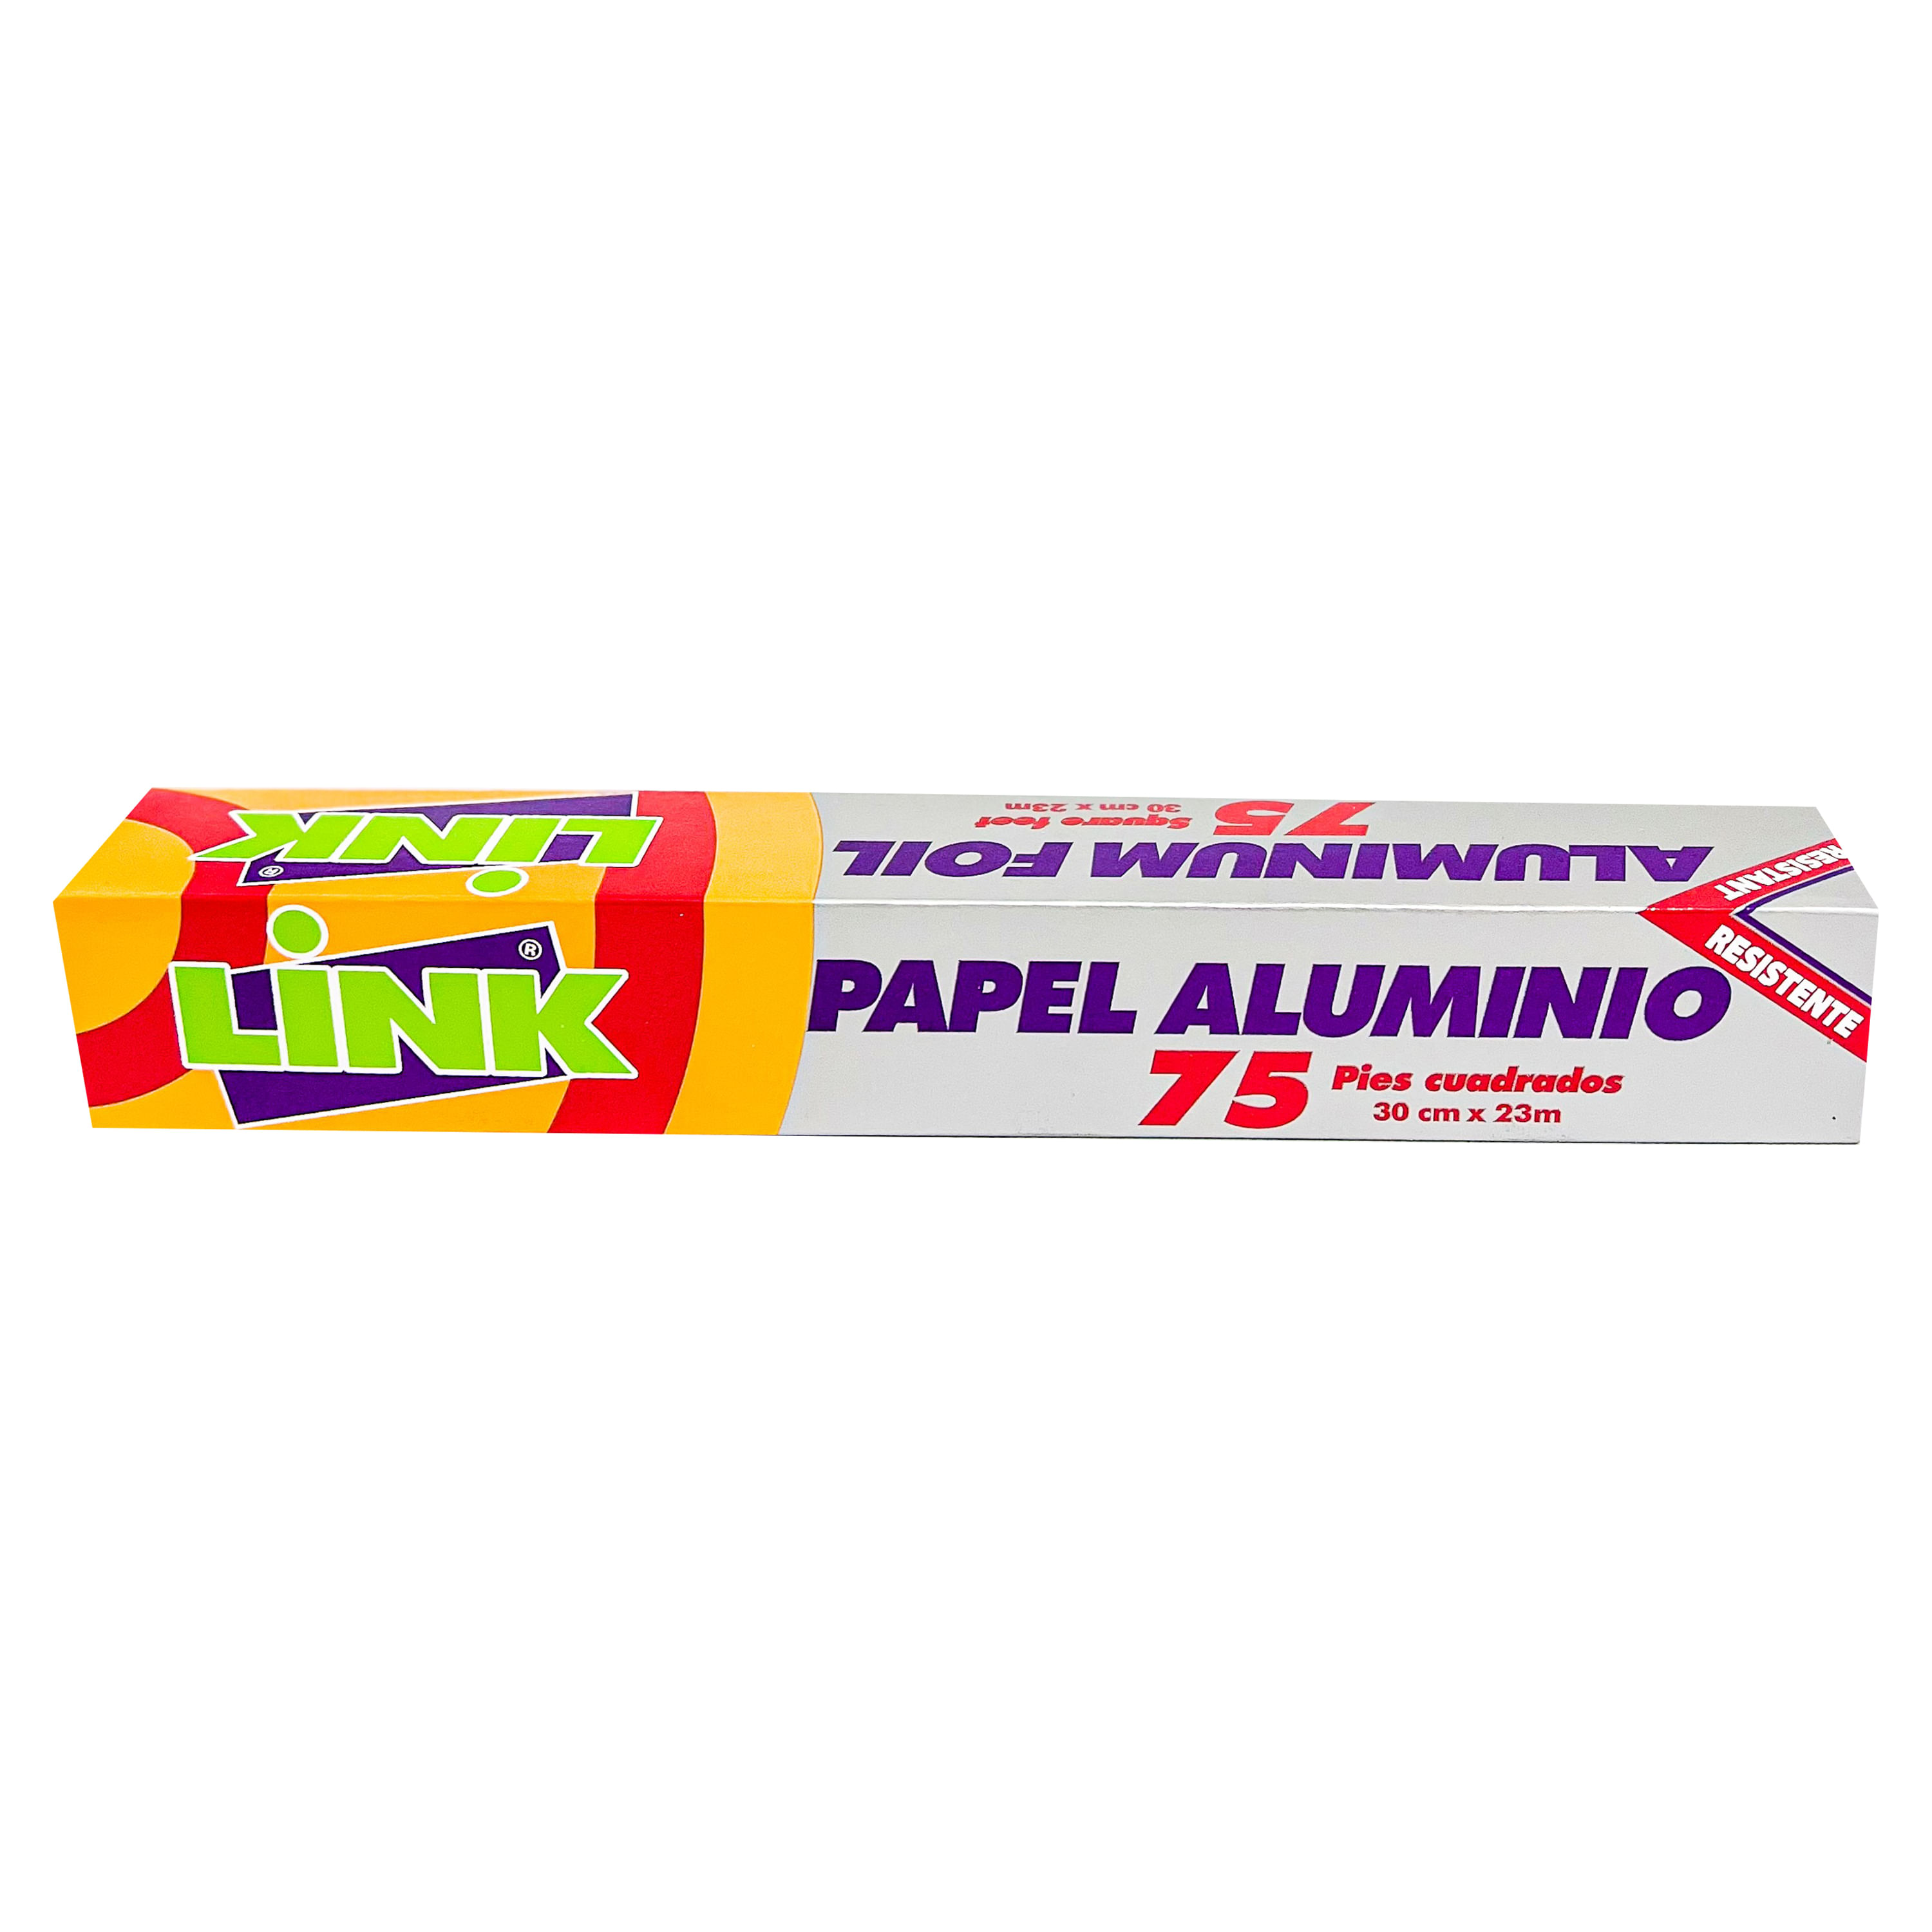 Papel-Aluminio-Link-25-Pies-1-Unidad-1-7727